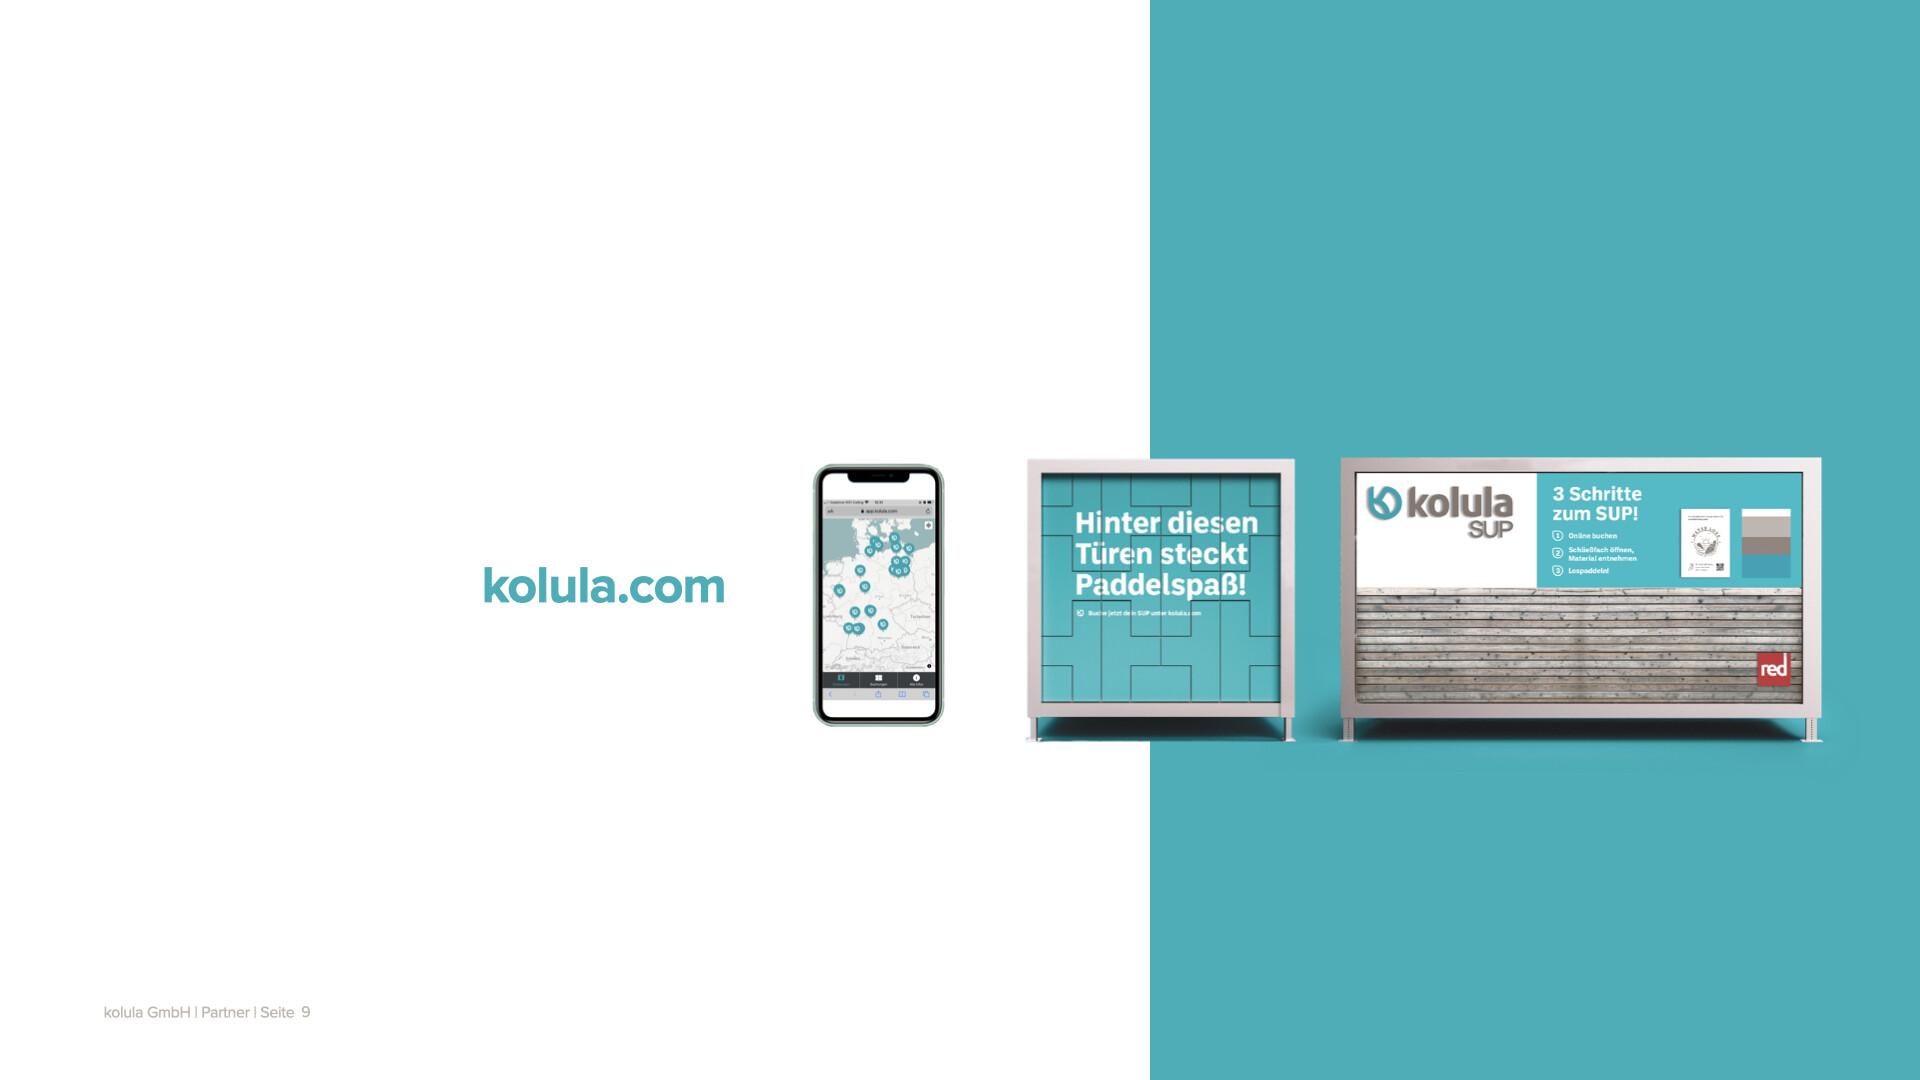 kolula / startup from München / Background